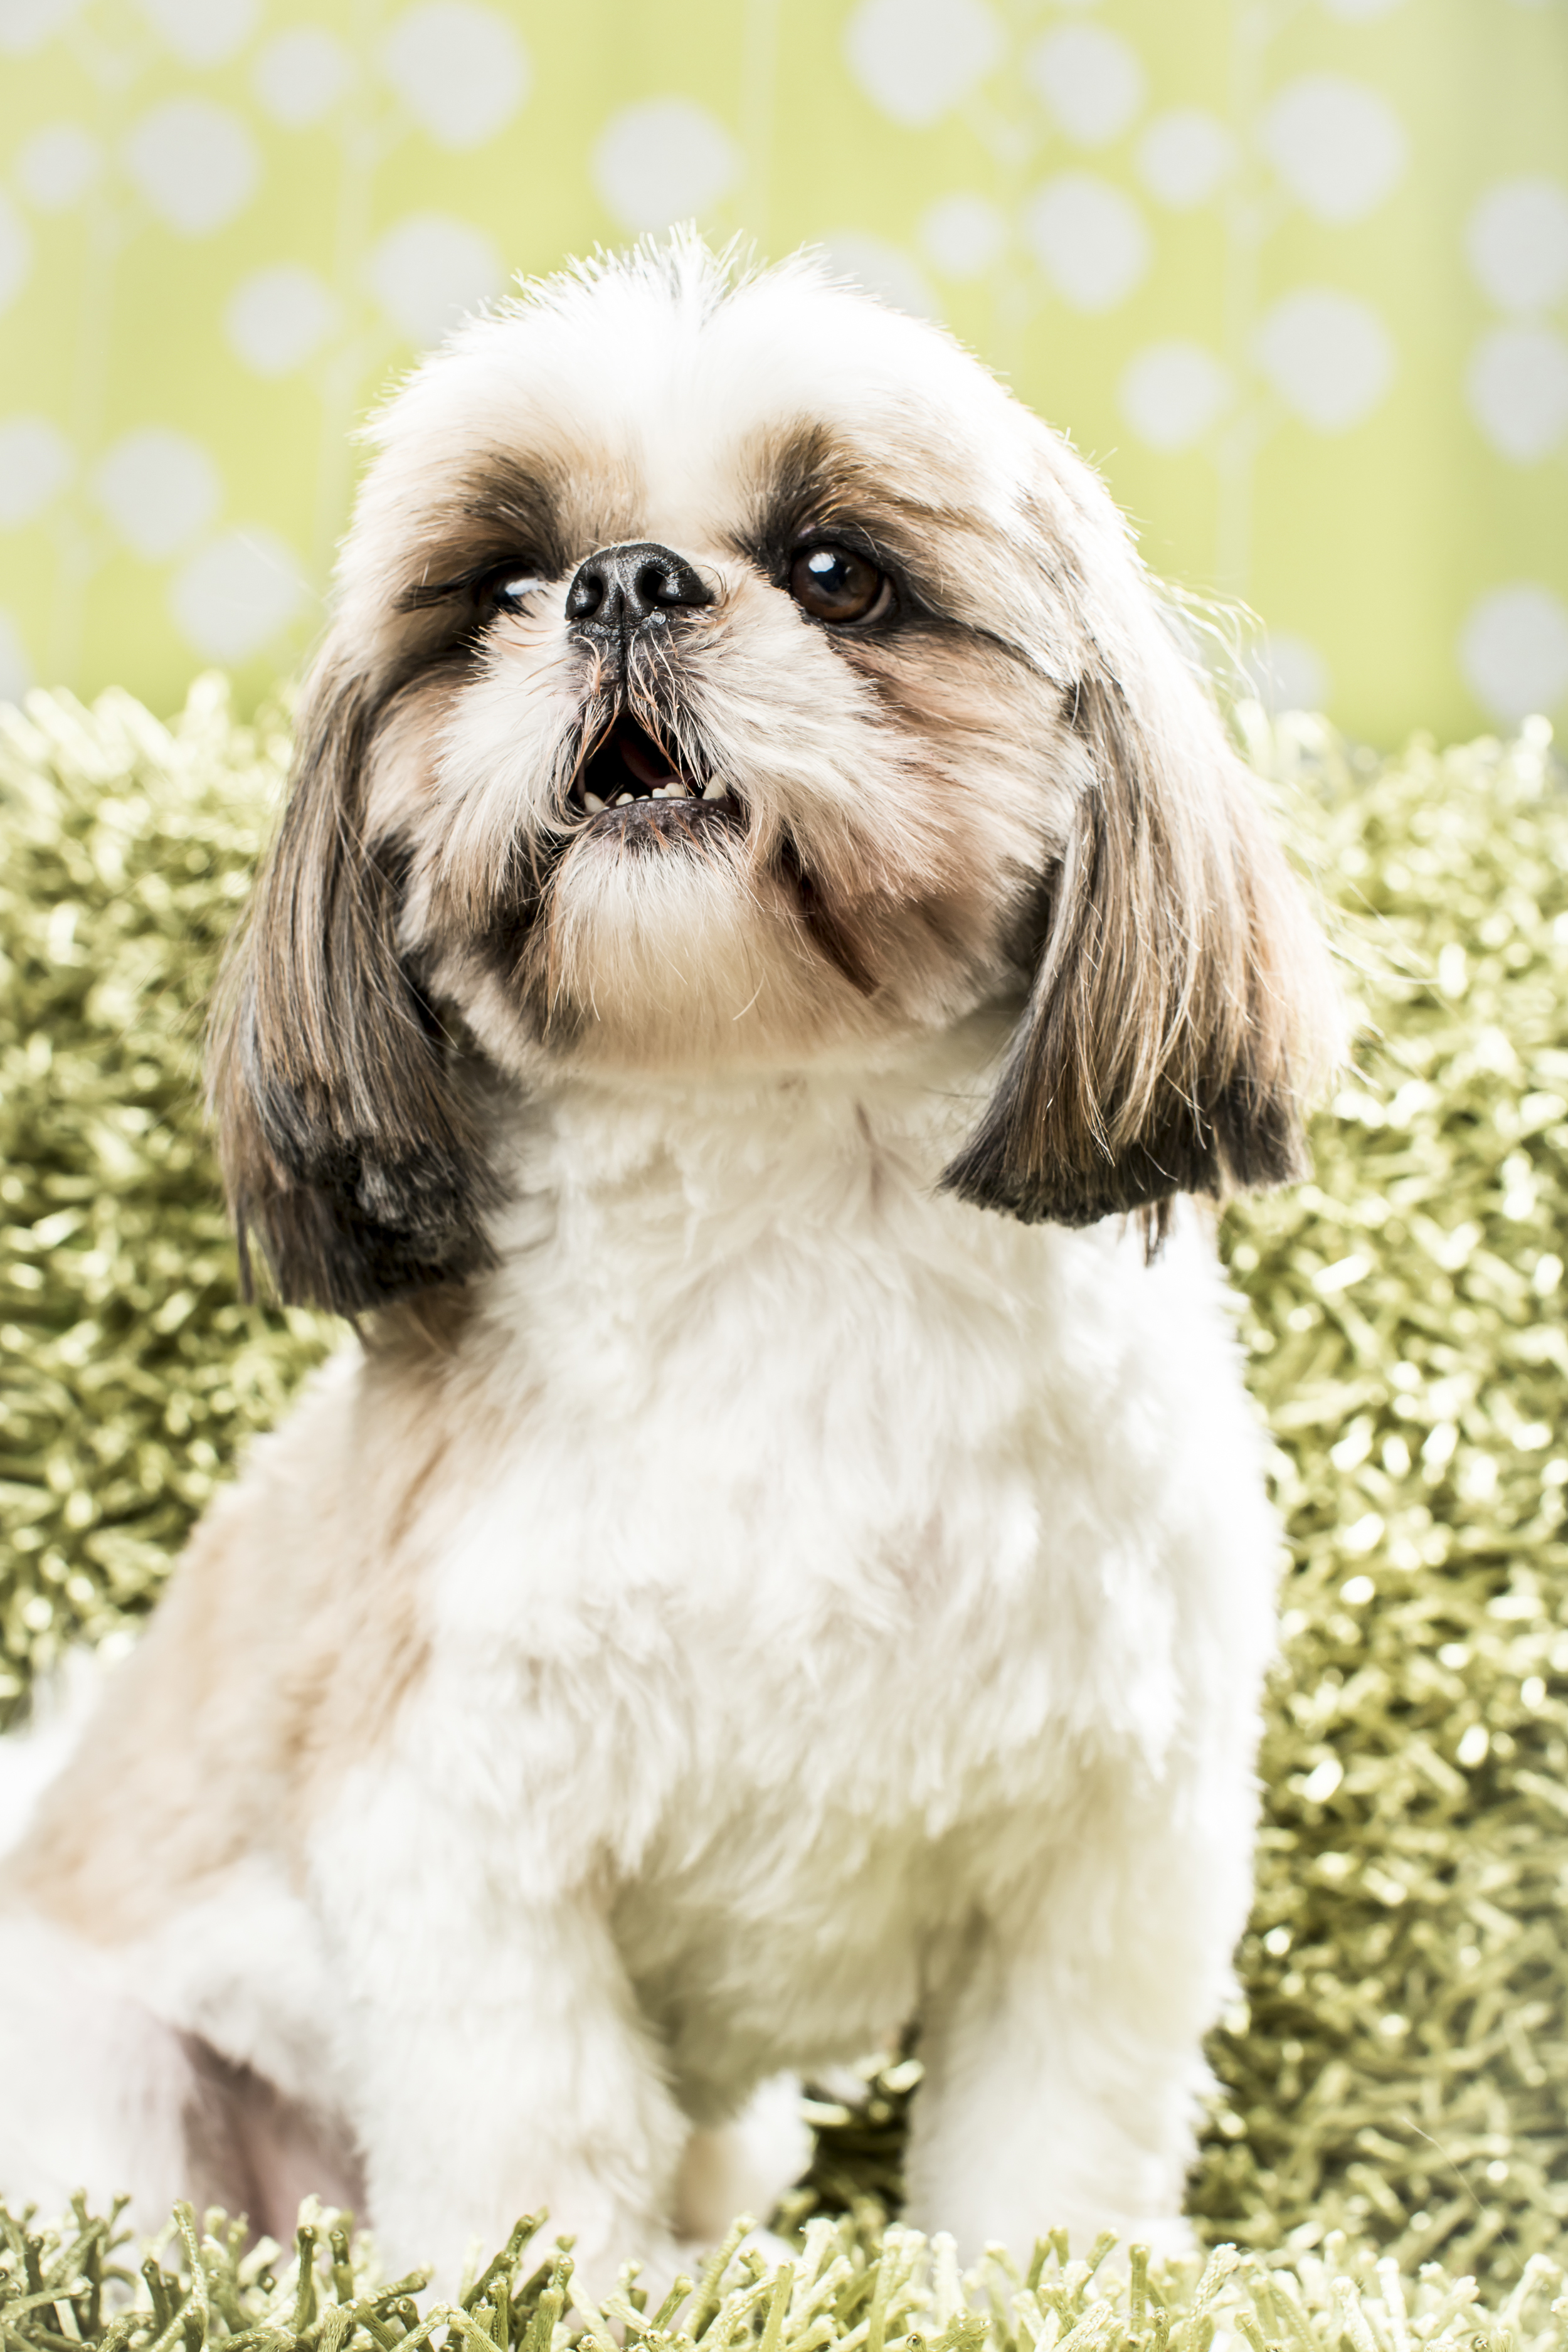 18 Shih tzu dog studio pet photography session on green vintage background.jpg